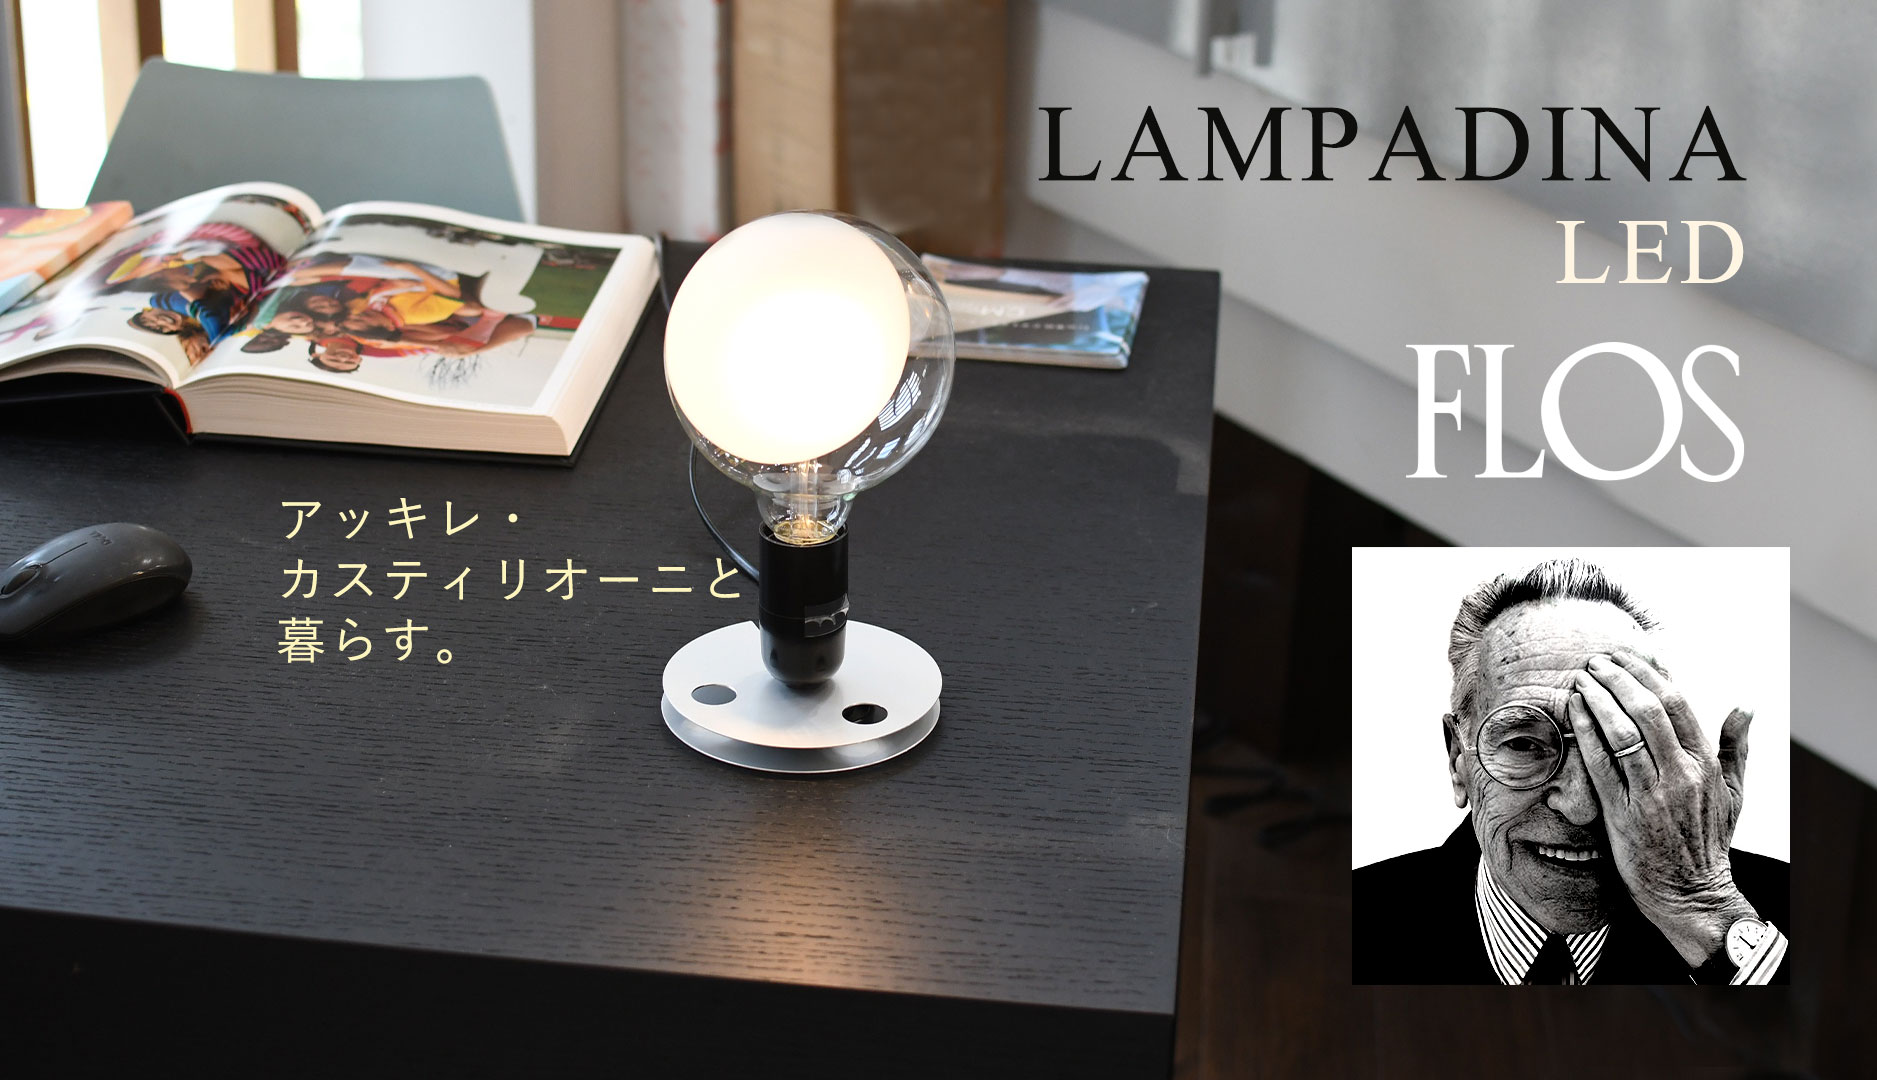 FLOS フロス テーブルライト LAMPADINA LED ランパディーナLED アキッレ・カスティリオーニ